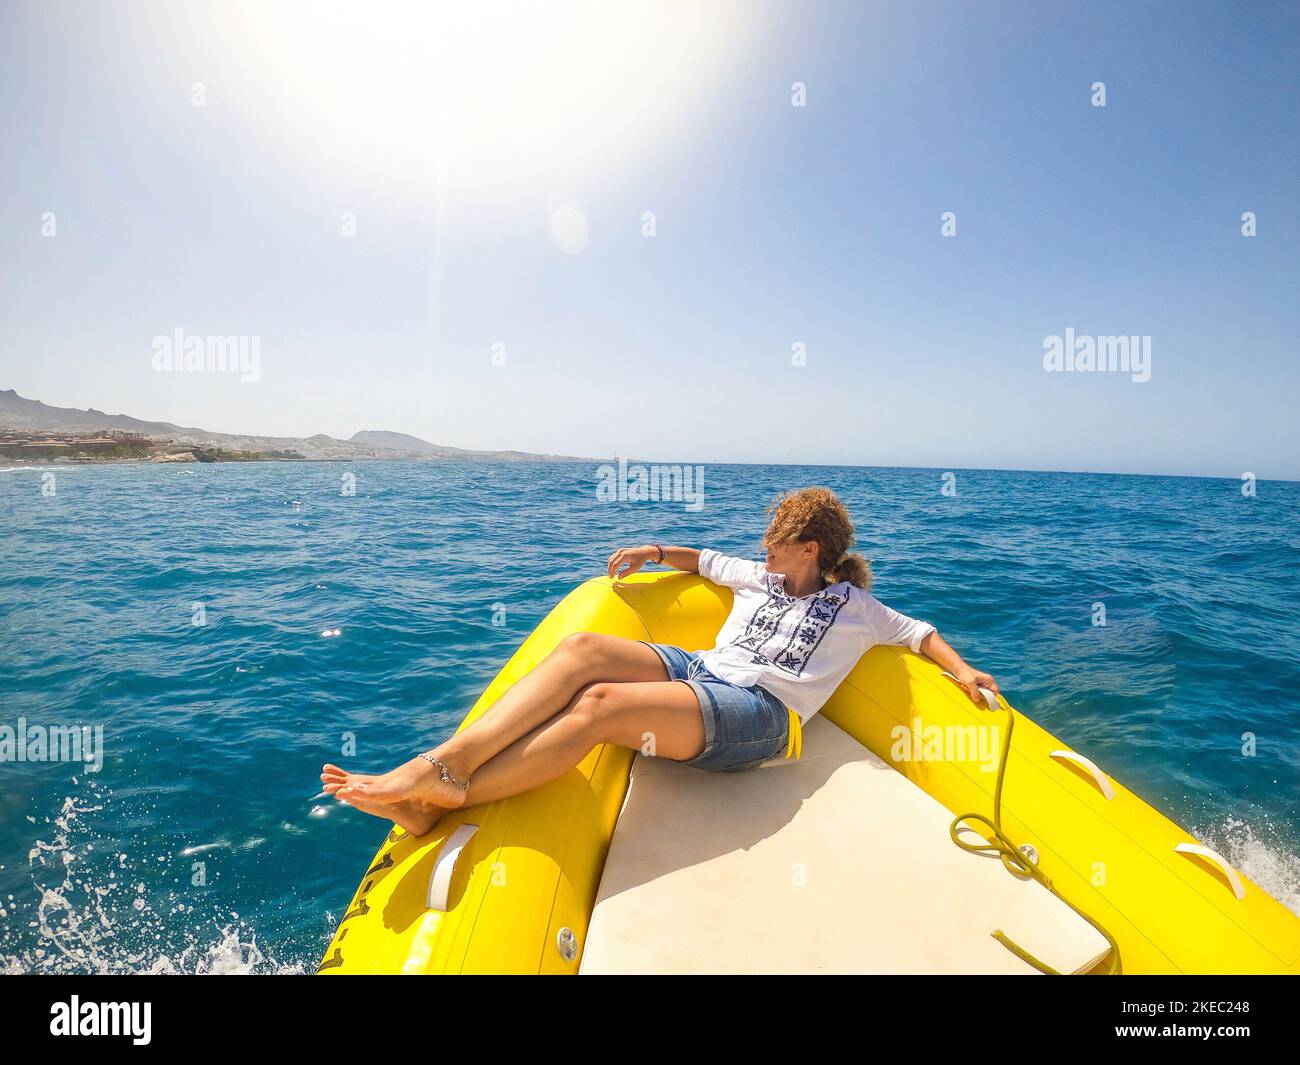 una giovane donna sdraiata su una barca che viaggia alla scoperta del mare godendosi e rilassandosi con una giornata di sole - guardando la costa dal gommone Foto Stock